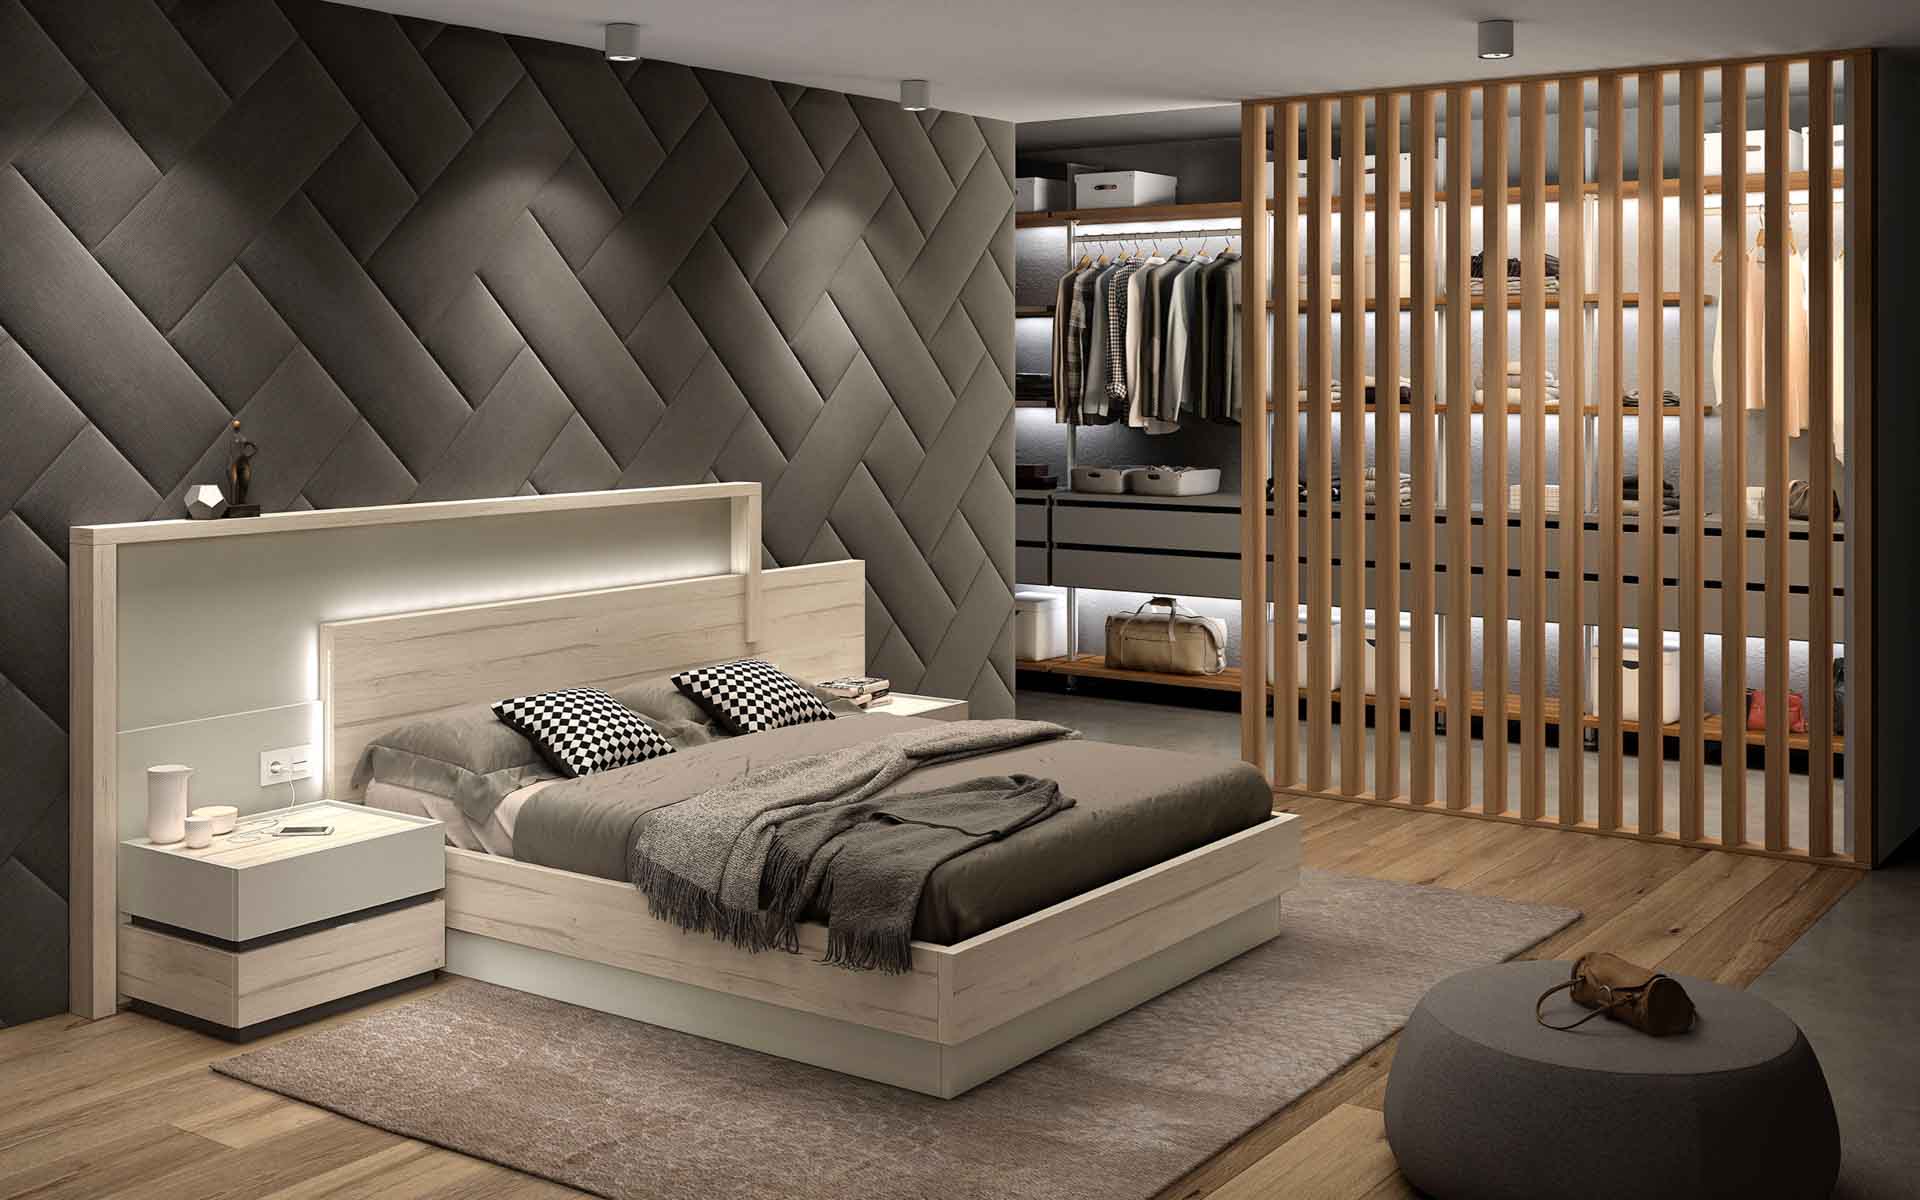 Diseño de mobiliario de dormitorio 23